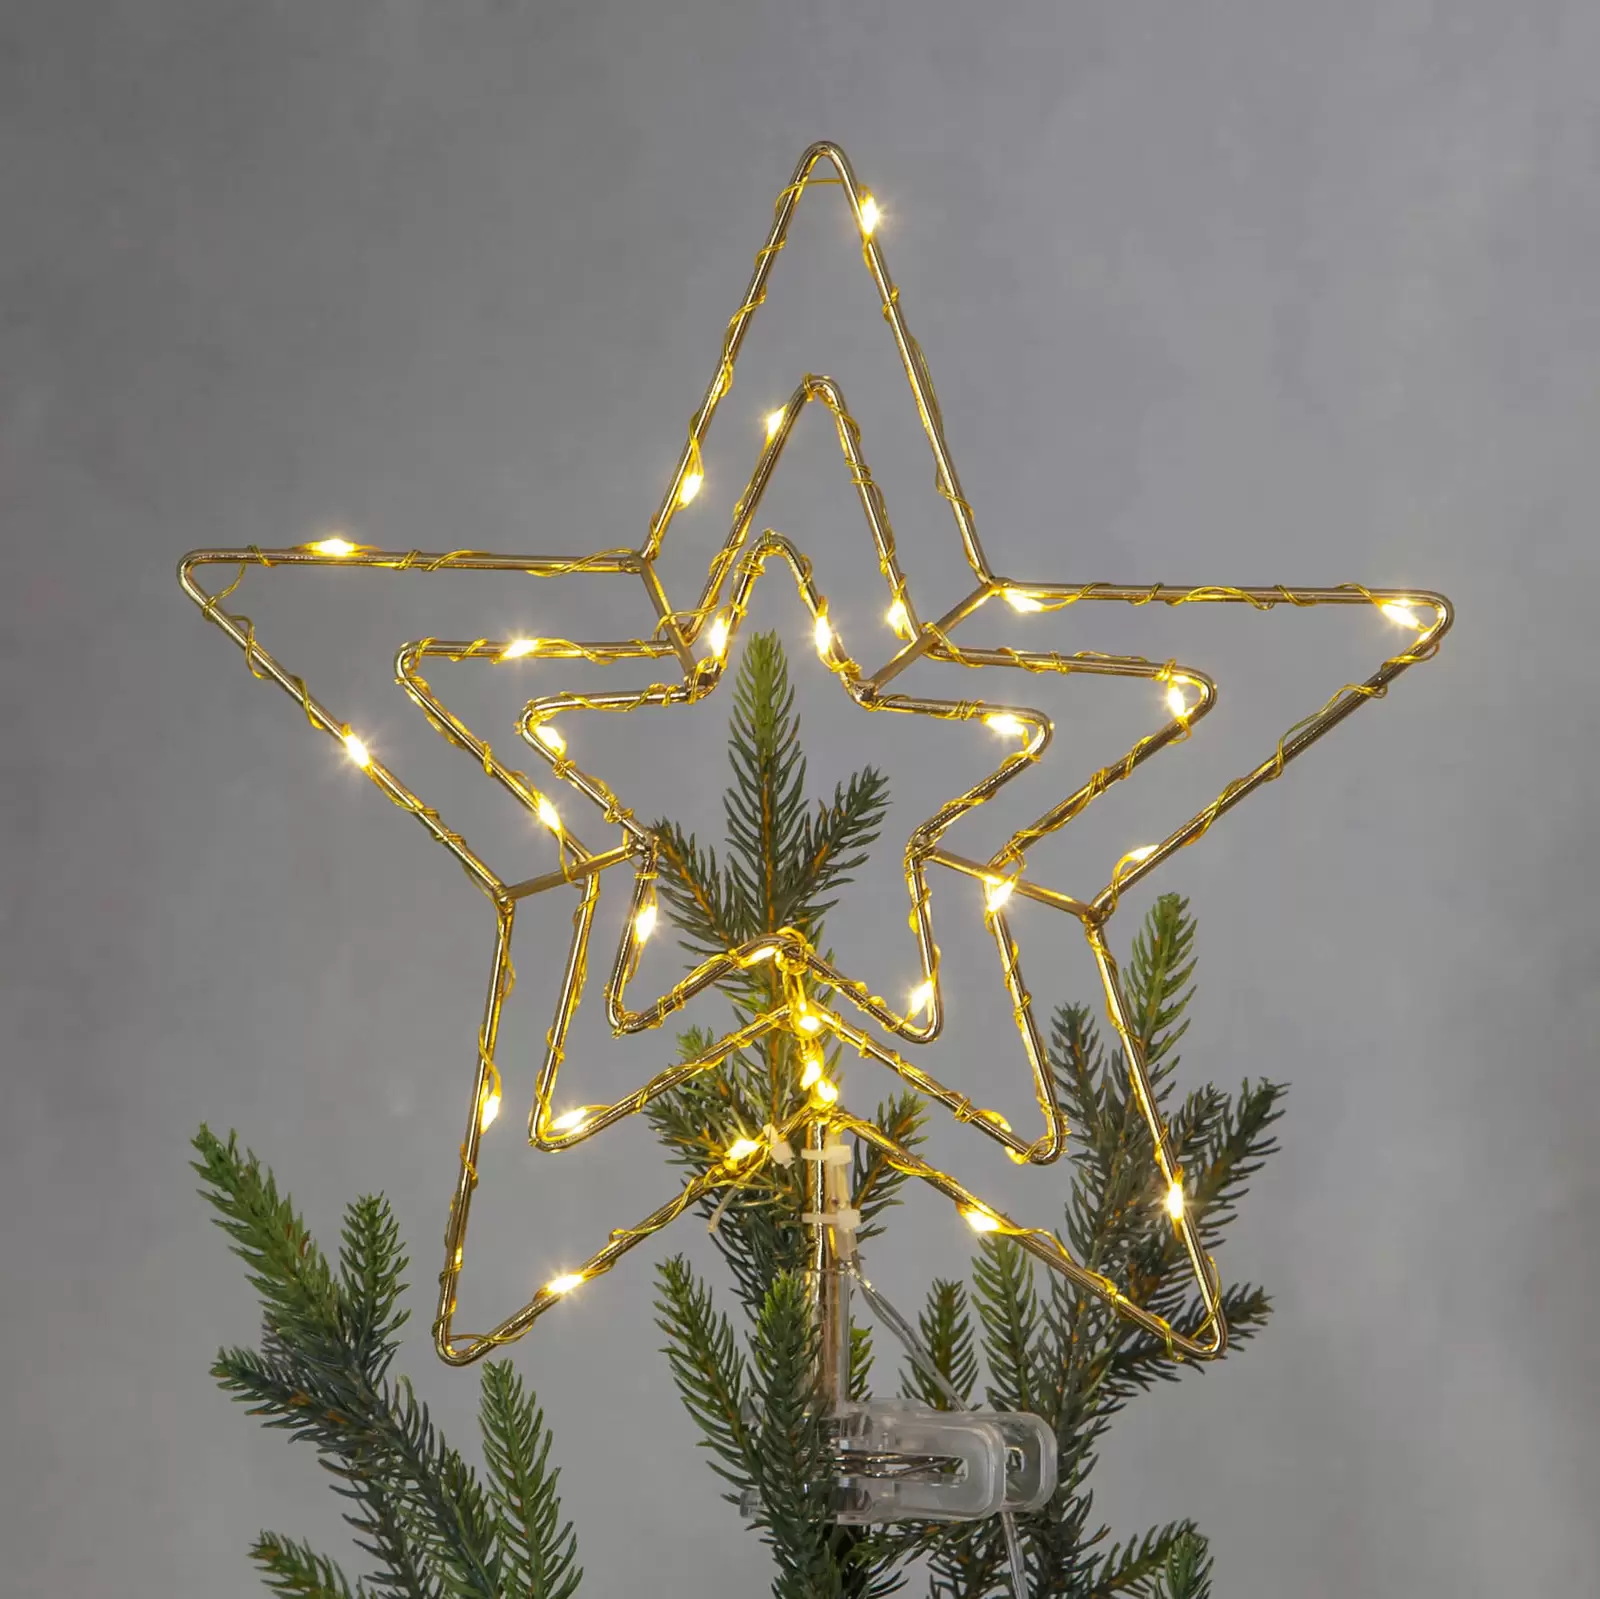 Kssiaz Weihnachtsbaum Spitze Stern, 3D Sechseckig LED Lampe Weihnachtsstern  Baumspitze mit Timer & 8 Lichtmodi, USB-betrieben Beleuchtung  Weihnachtsbaum, Silber : : Küche, Haushalt & Wohnen